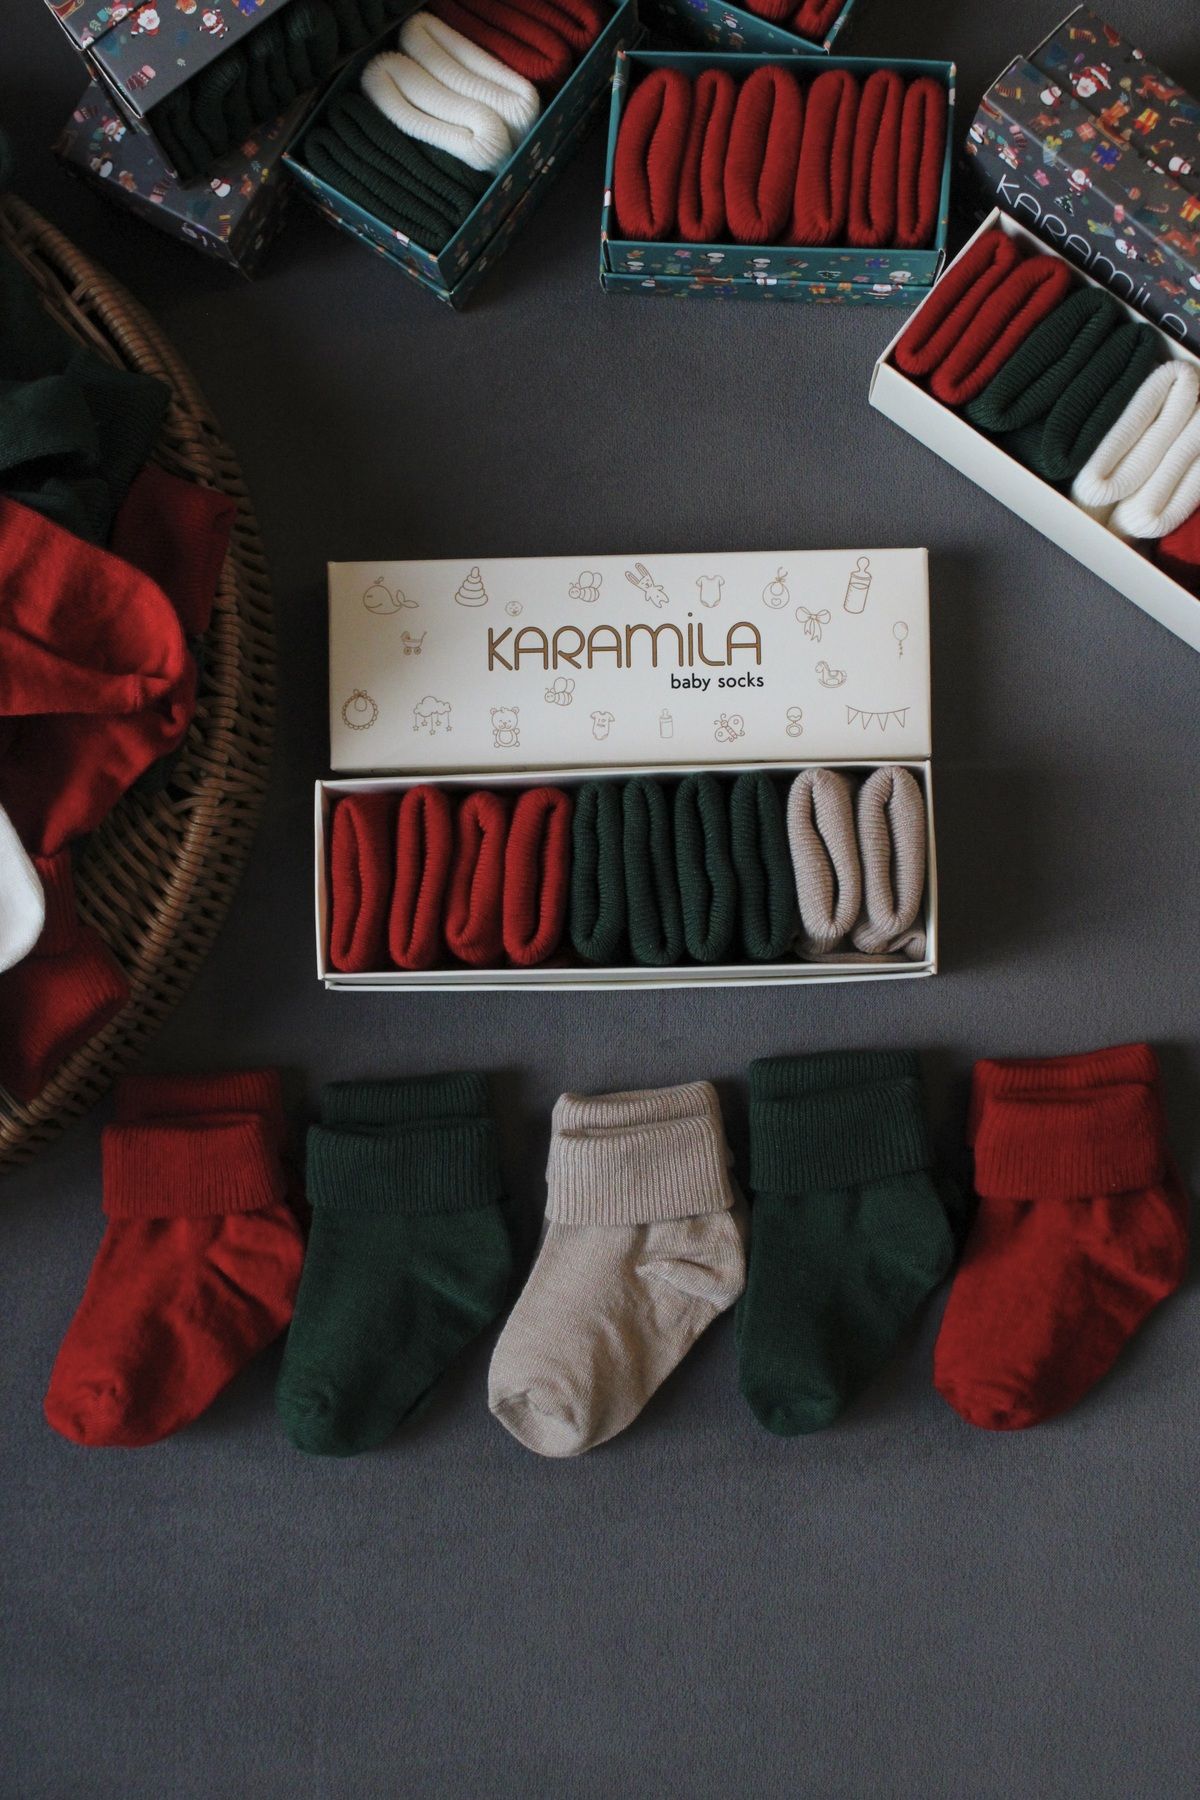 KARAMİLA 5'Lİ Set Bambu Bebek Çorap - Yılbaşı Özel Kutulu Yılbaşı Özel Koleksiyon